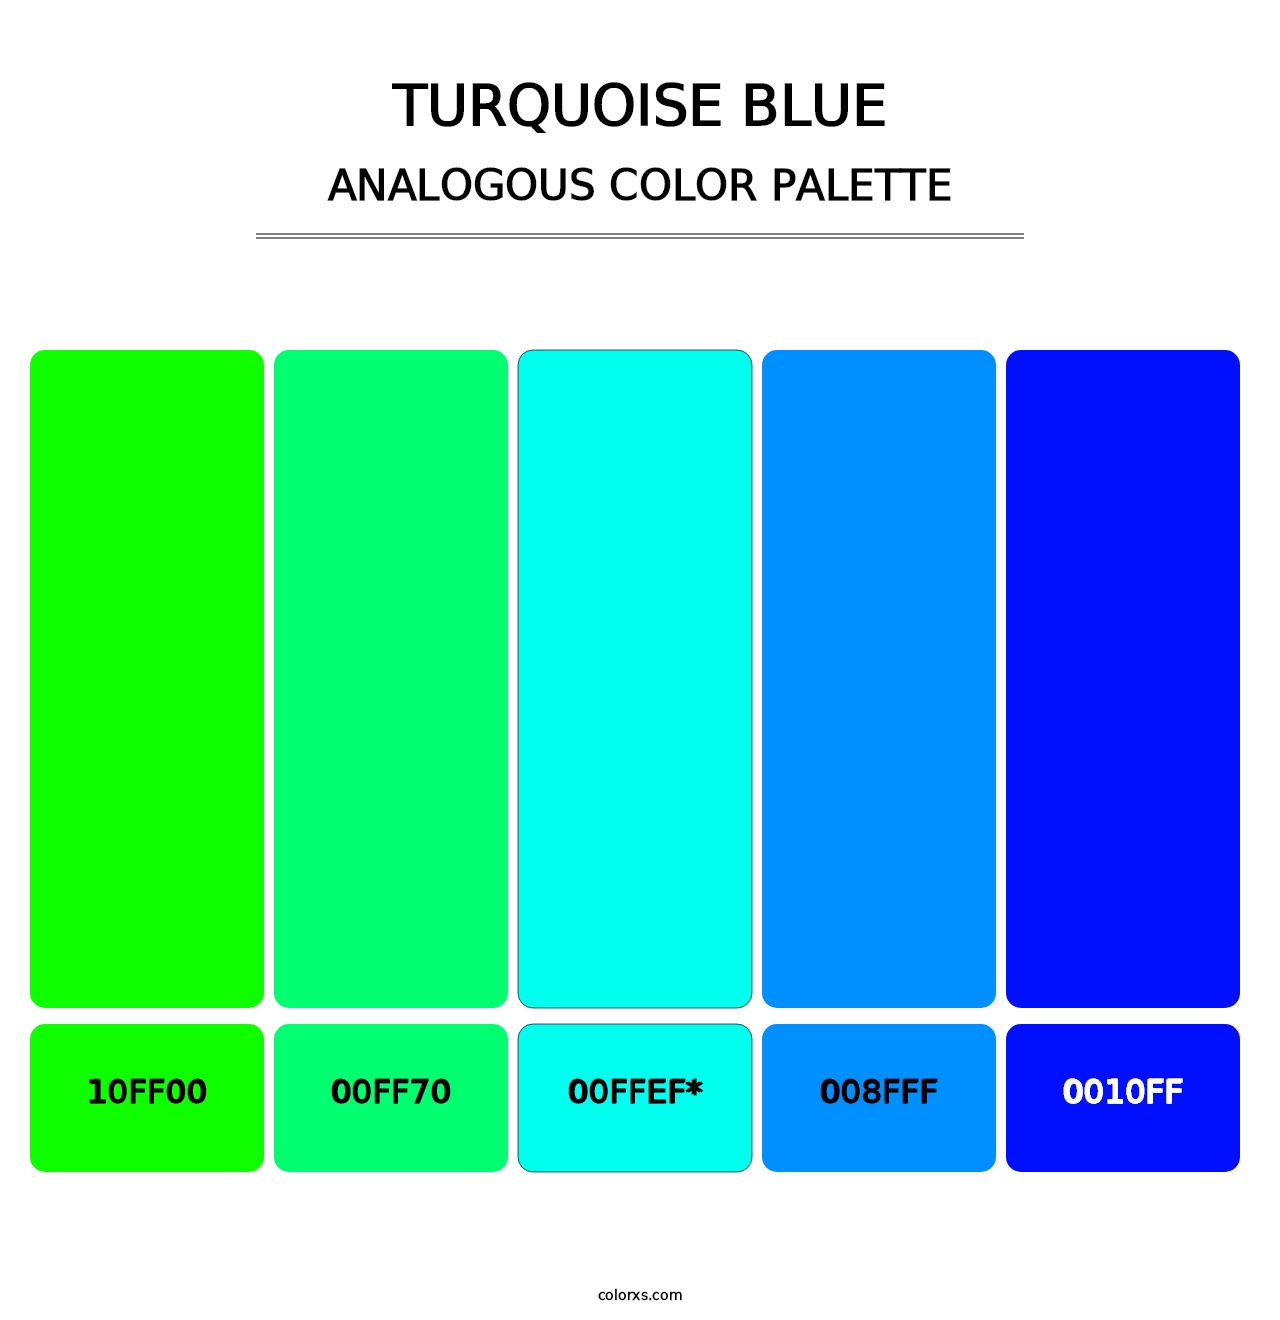 Turquoise Blue - Analogous Color Palette